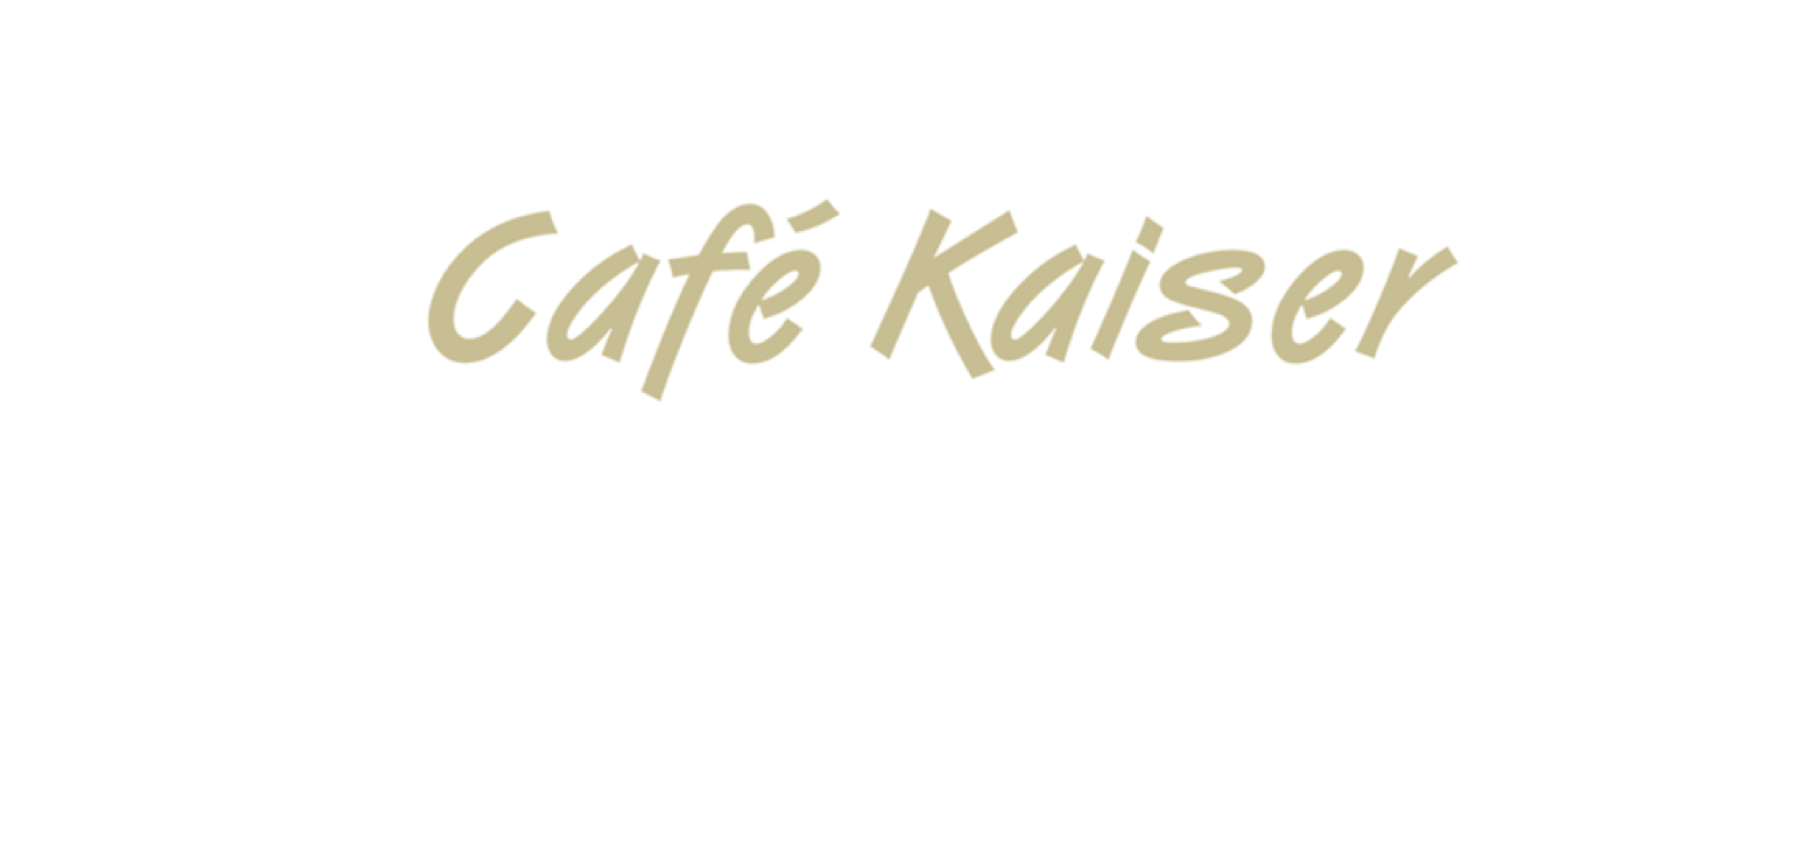 Café app - Café kaiser